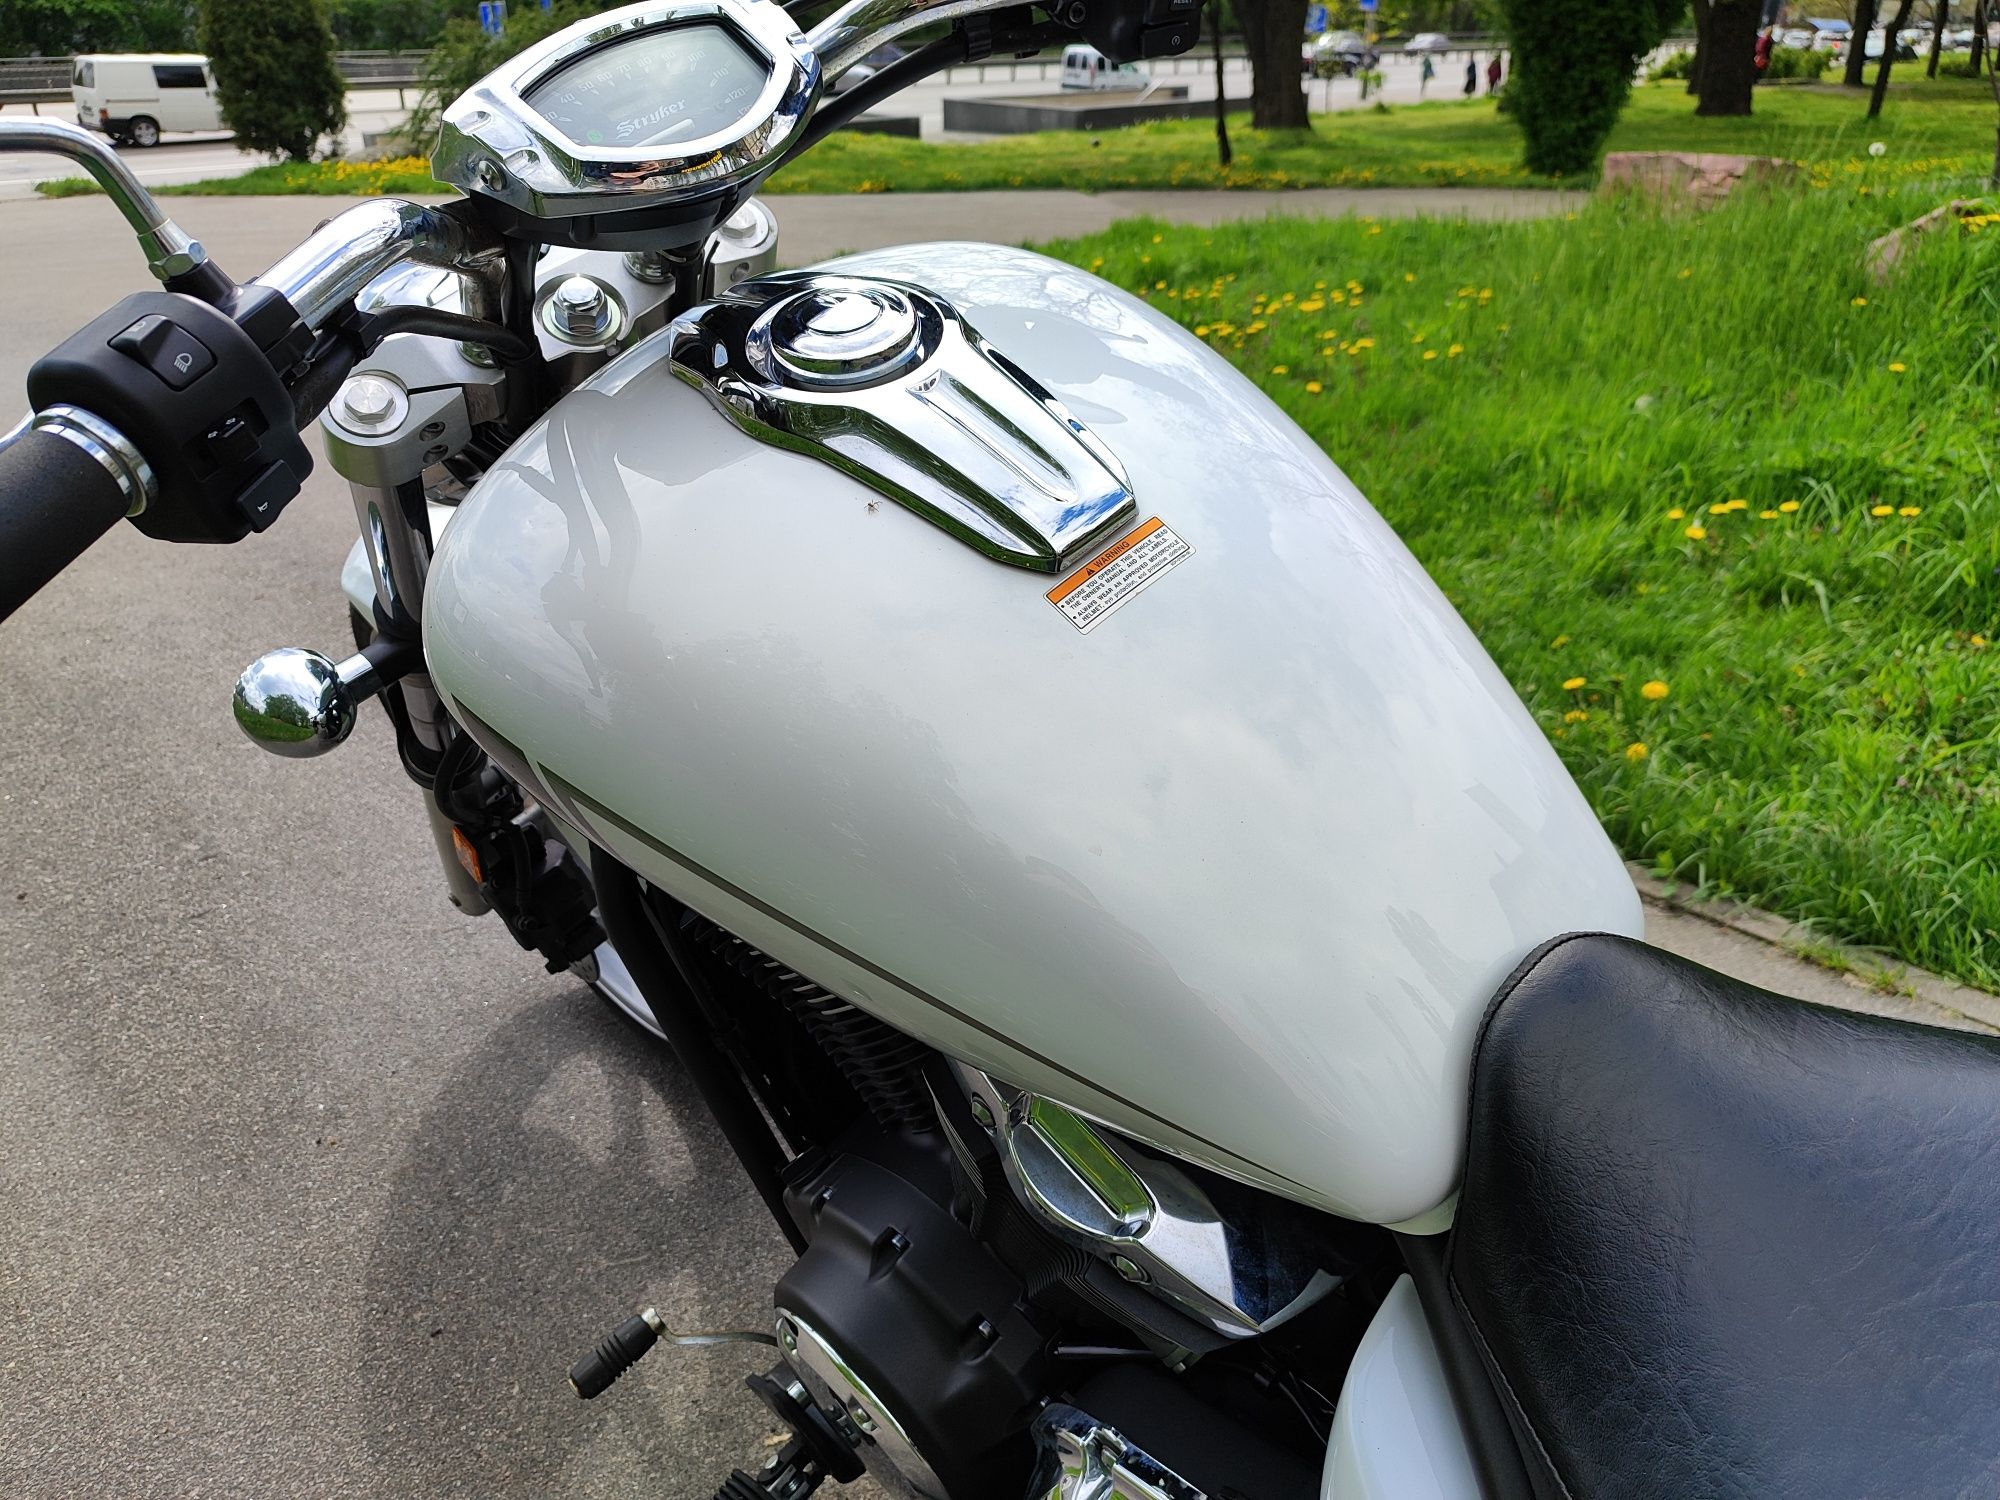 Продам  мотоцикл yamaha xvs 1300 stryker  2013рік 3207пробіг